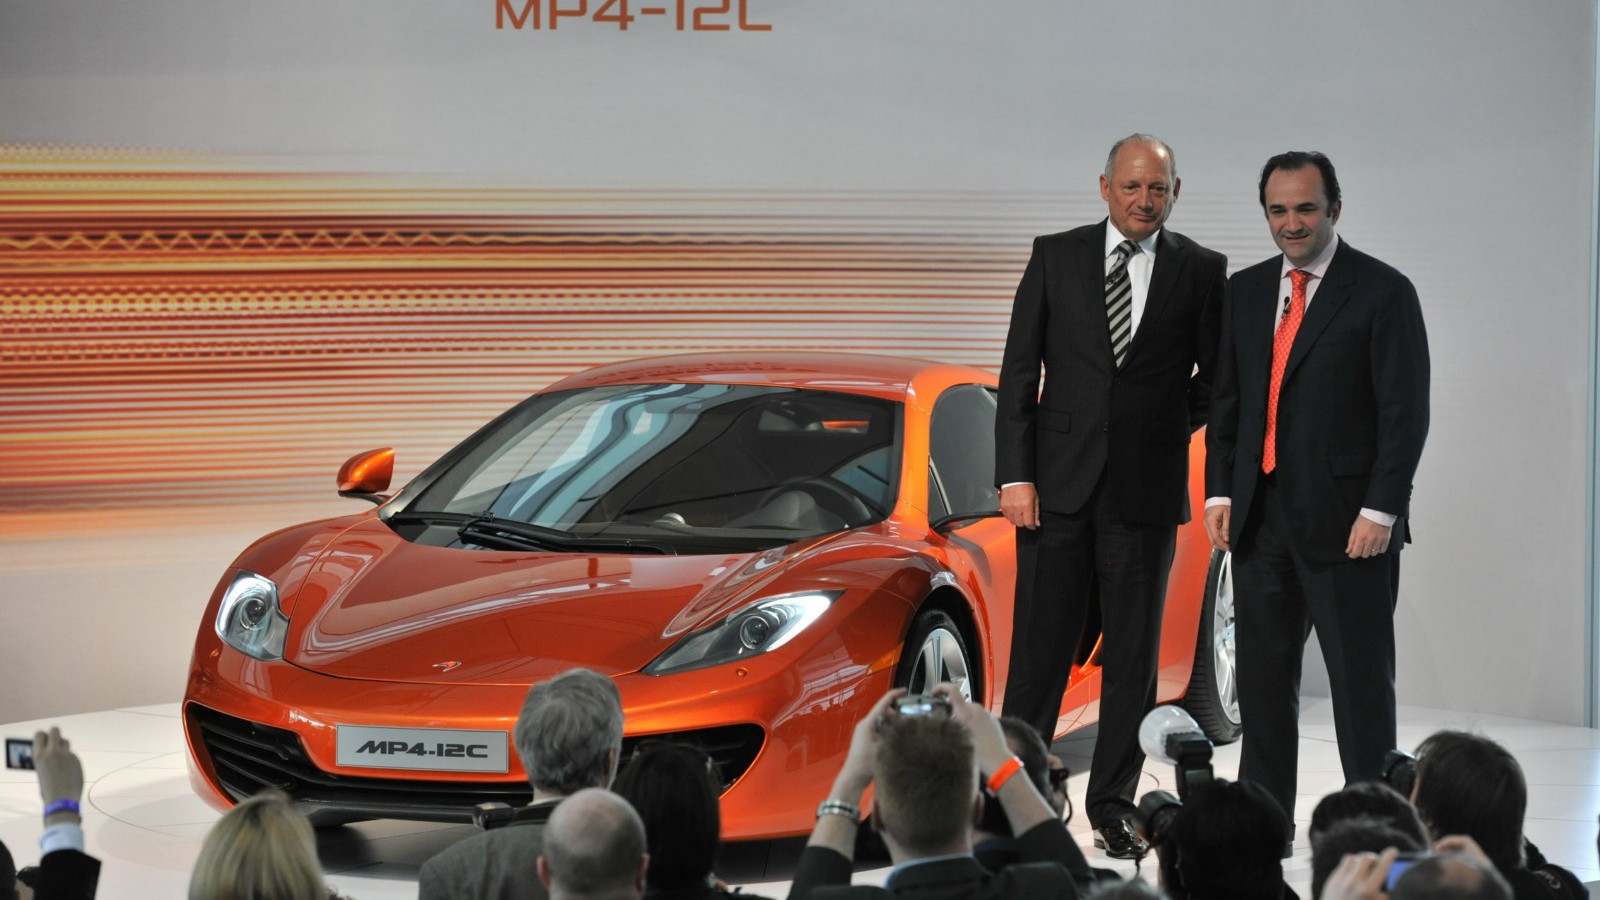 McLaren Automotive launch presentation